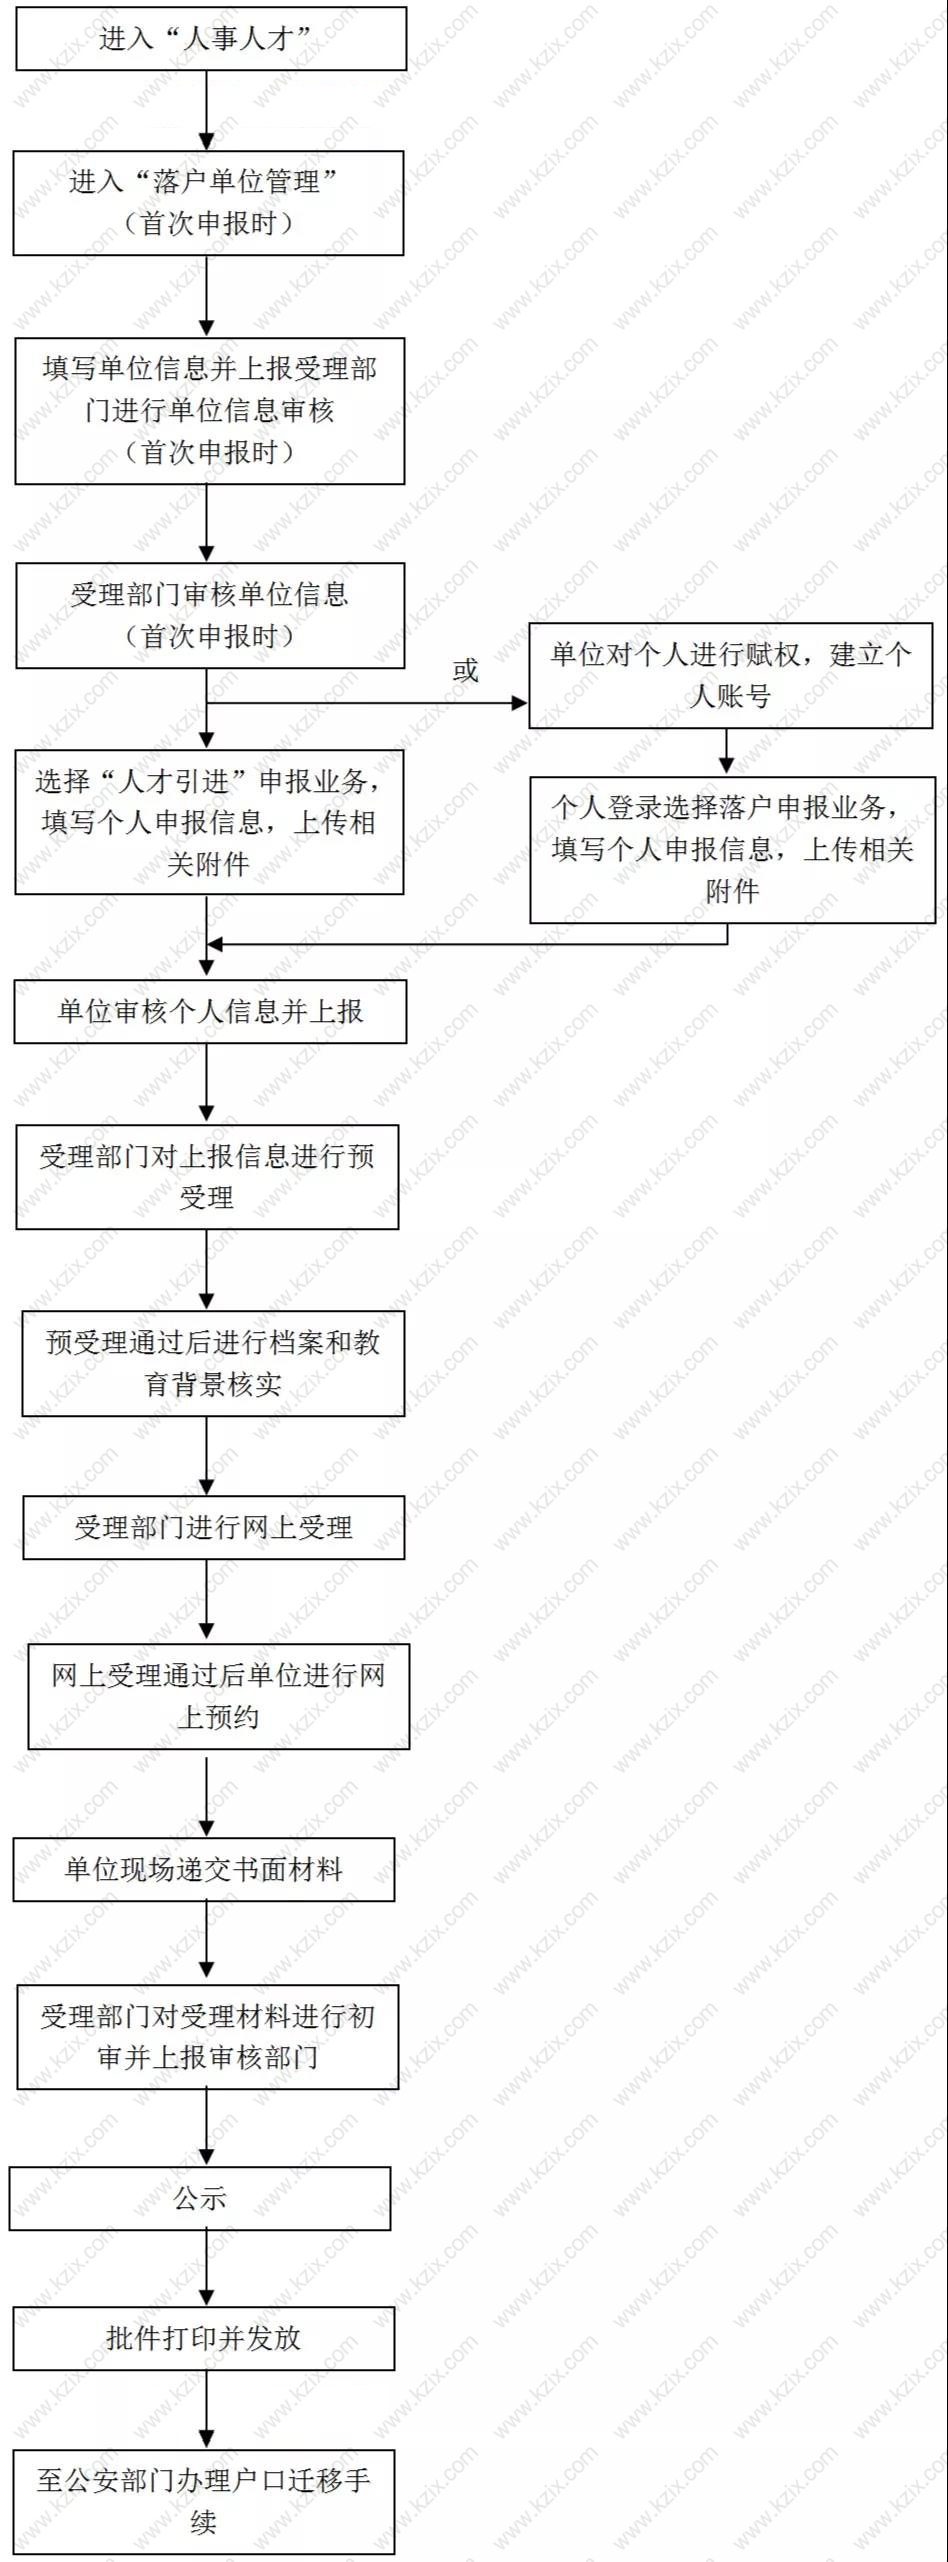 上海人才引进落户上海的流程图